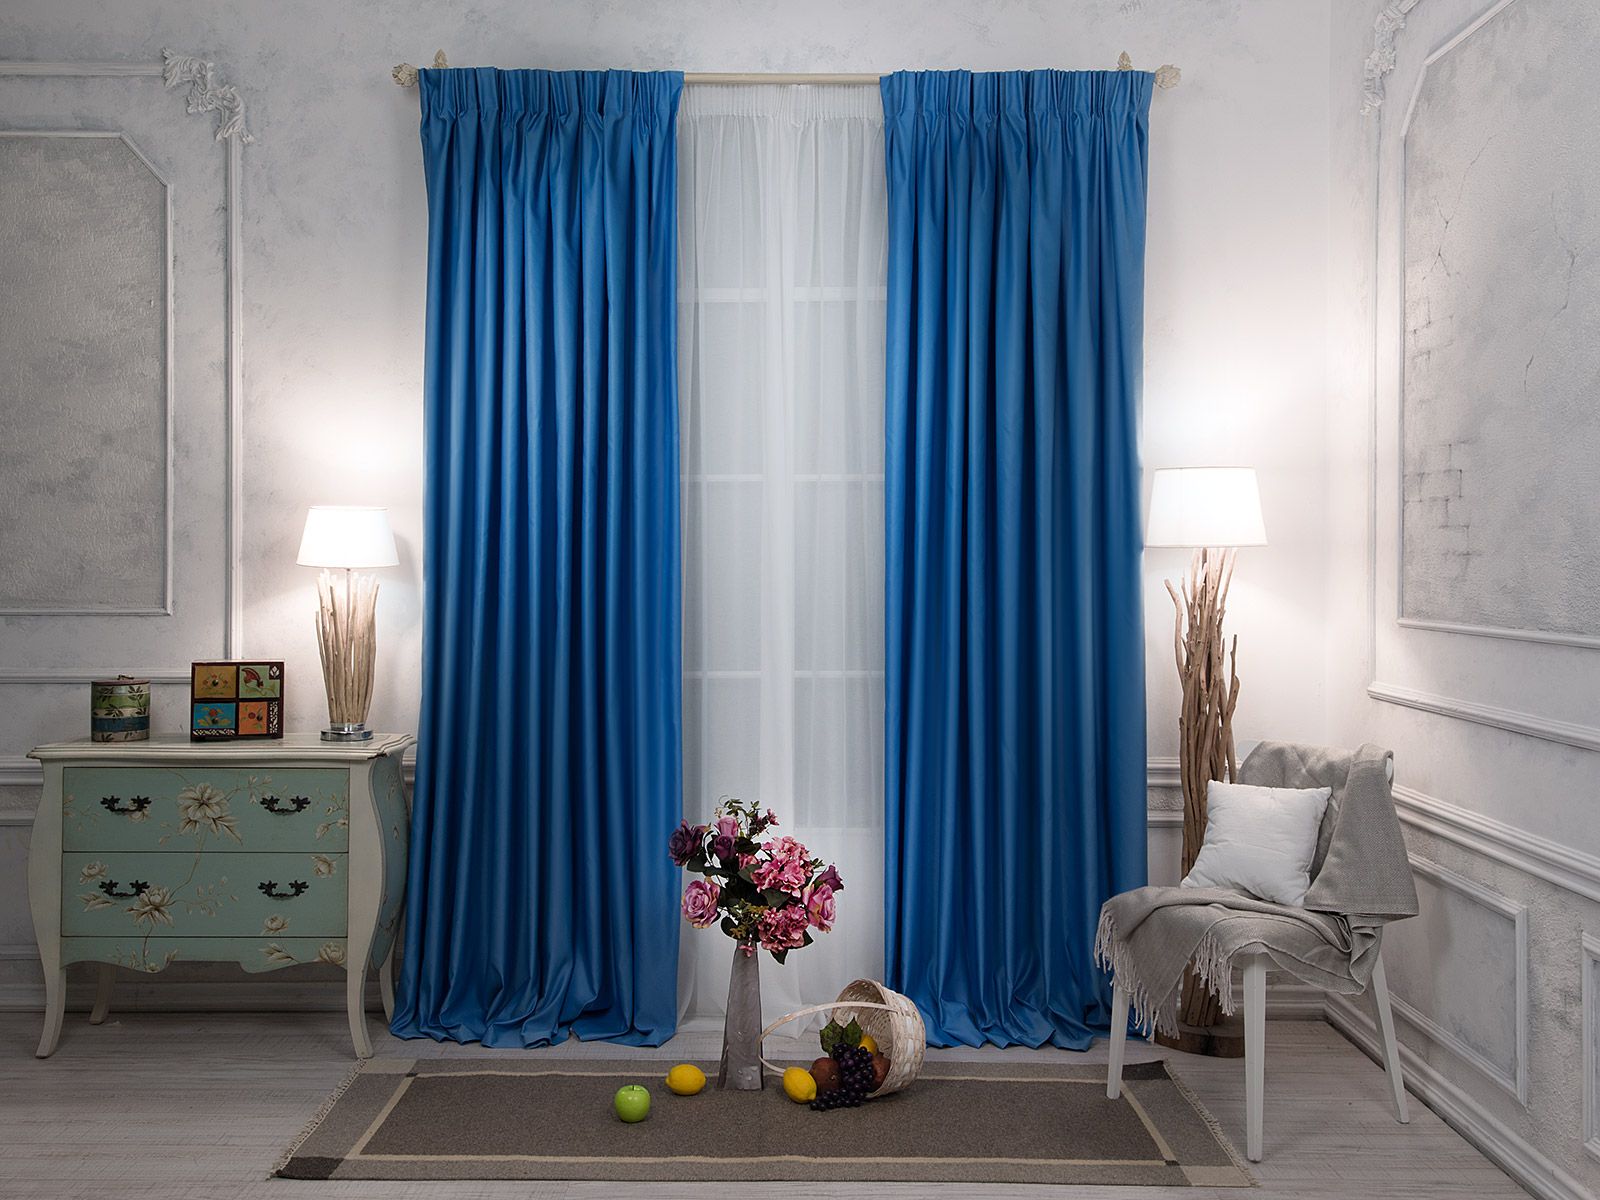  шторы: в интерьере гостиной, серо-голубые или голубые с коричневым